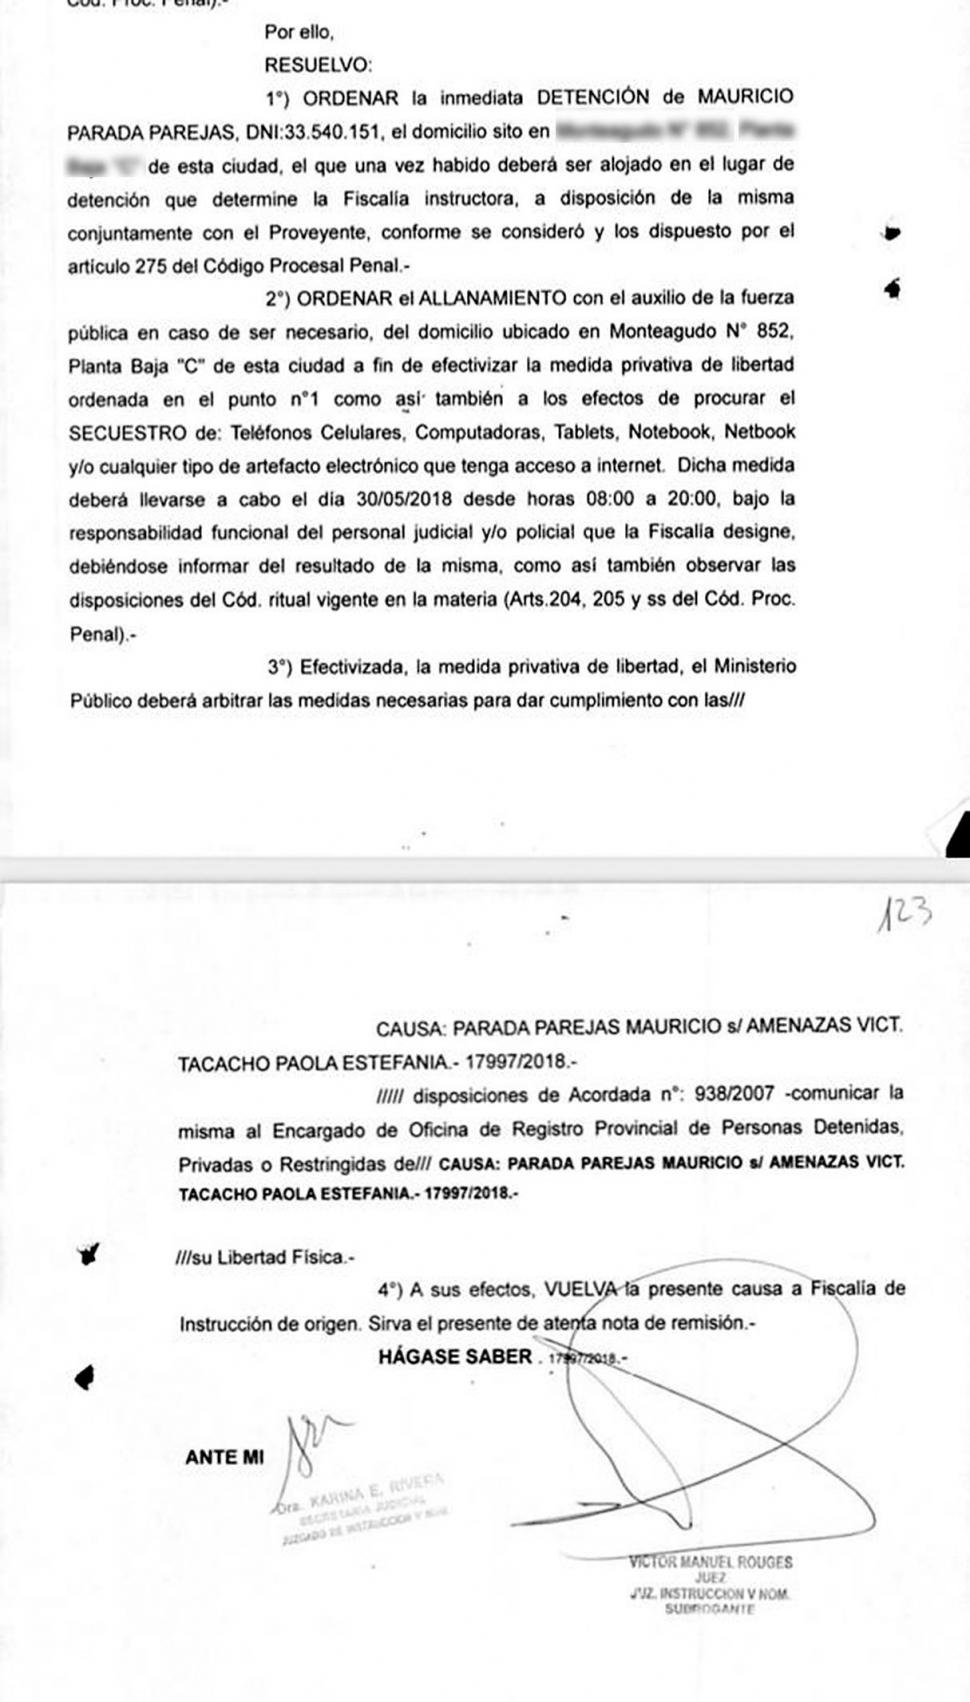 FACSÍMILES DE LA ORDEN DE DETENCIÓN Y DE LA DENUNCIA. La decisión judicial del 29 de mayo y el acta policial del 12 de julio de 2018. 